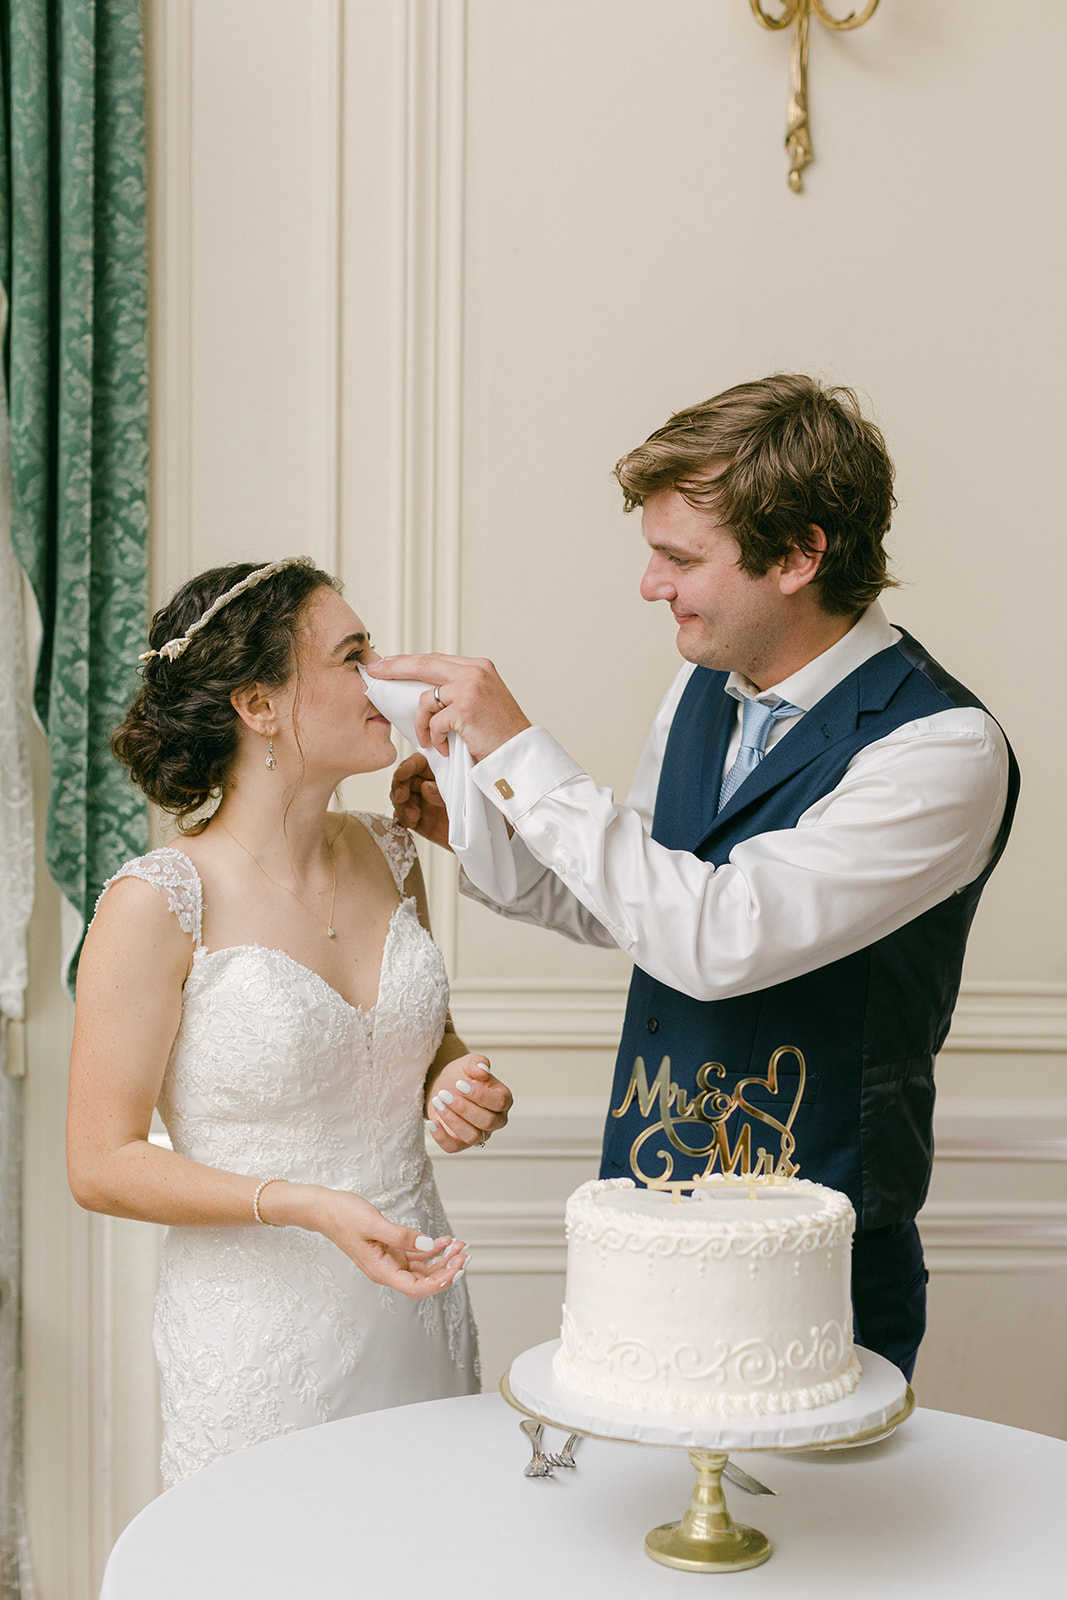 cake cutting at glen manor wedding